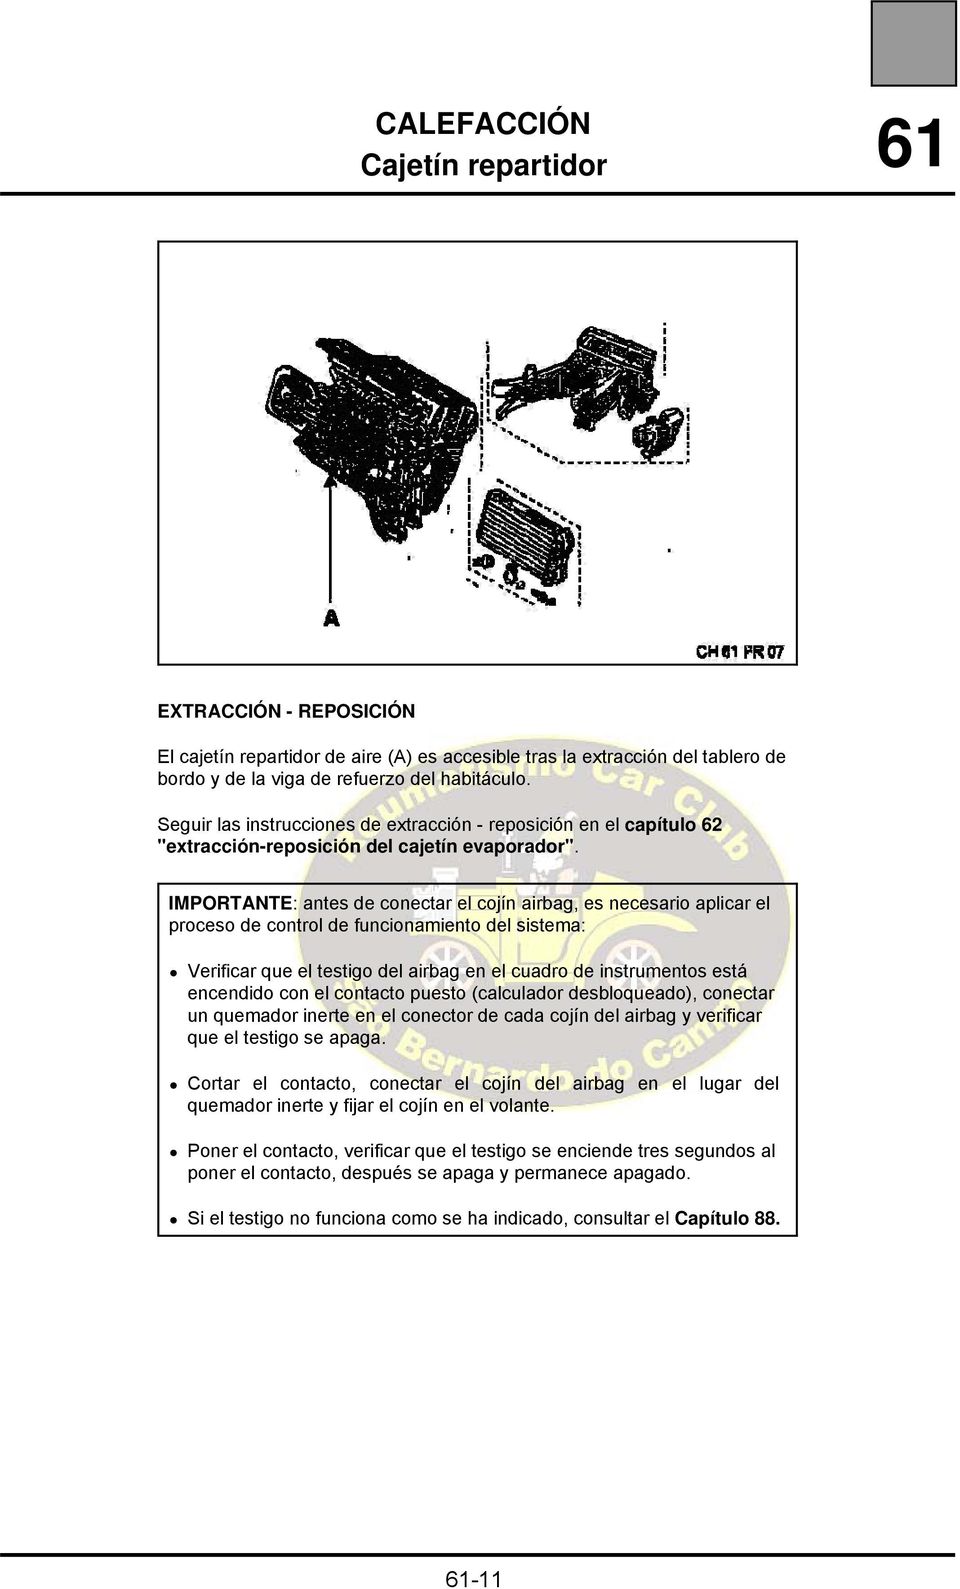 IMPORTANTE: antes de conectar el cojín airbag, es necesario aplicar el proceso de control de funcionamiento del sistema: Verificar que el testigo del airbag en el cuadro de instrumentos está